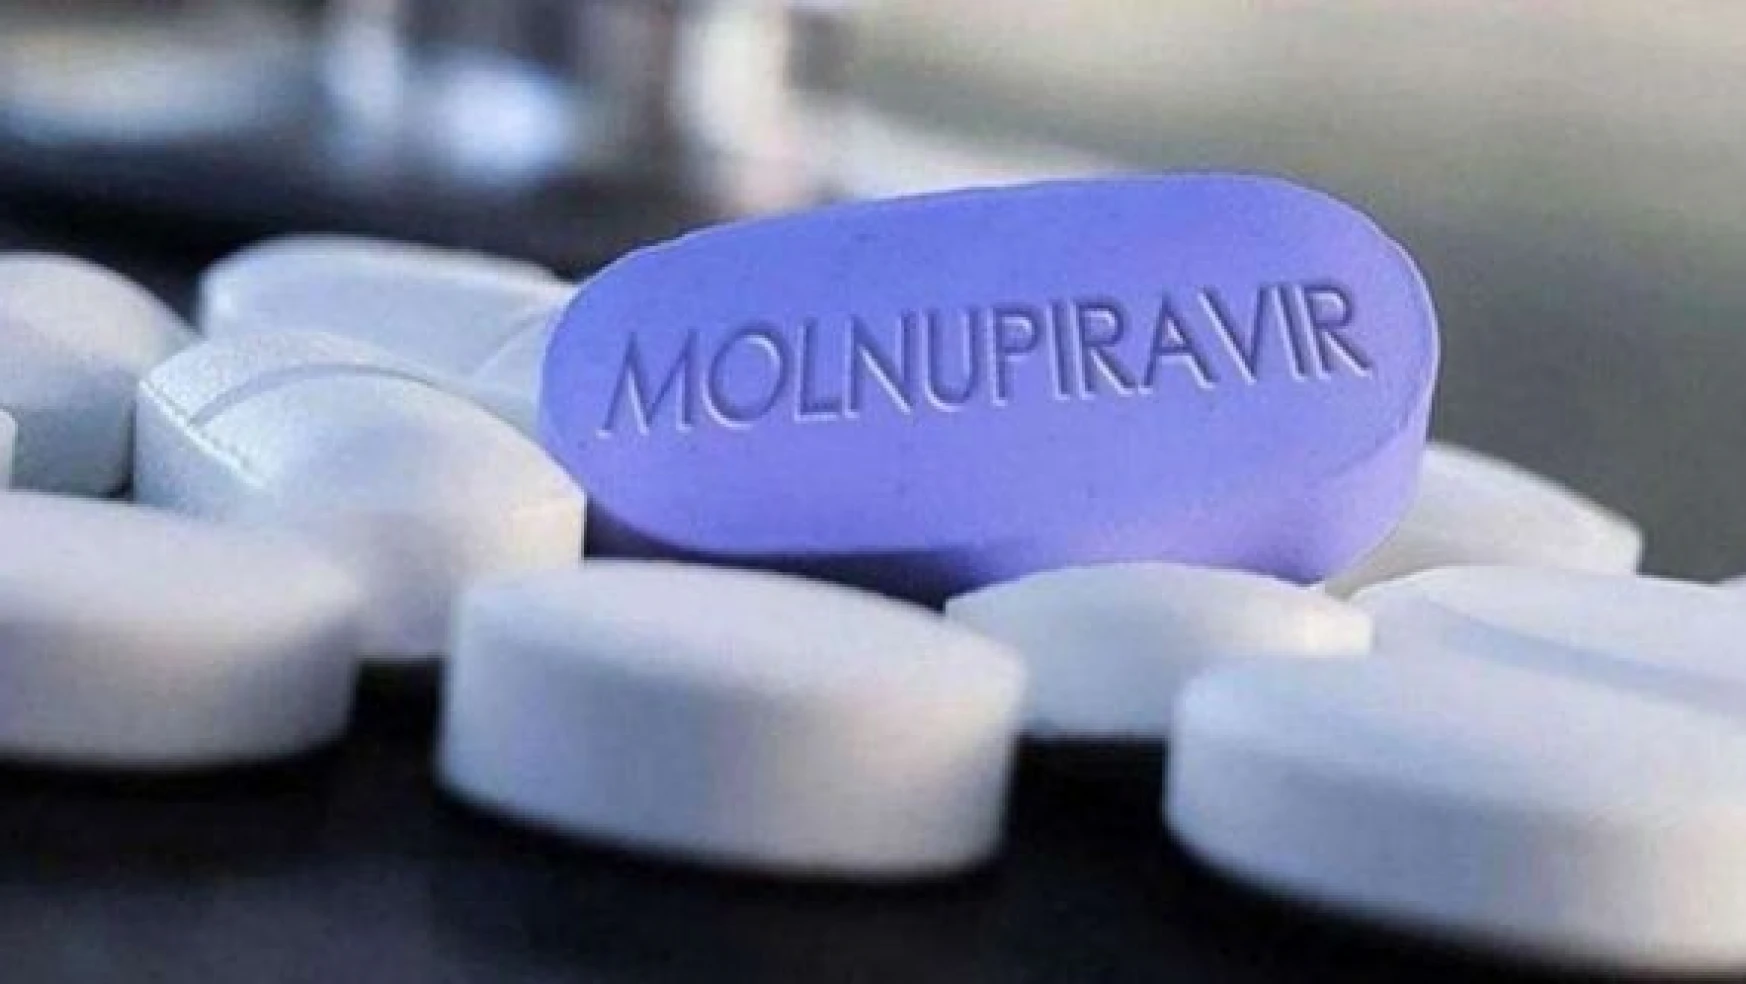 65 yaş üstü istisnasız molnupiravir kullanacak